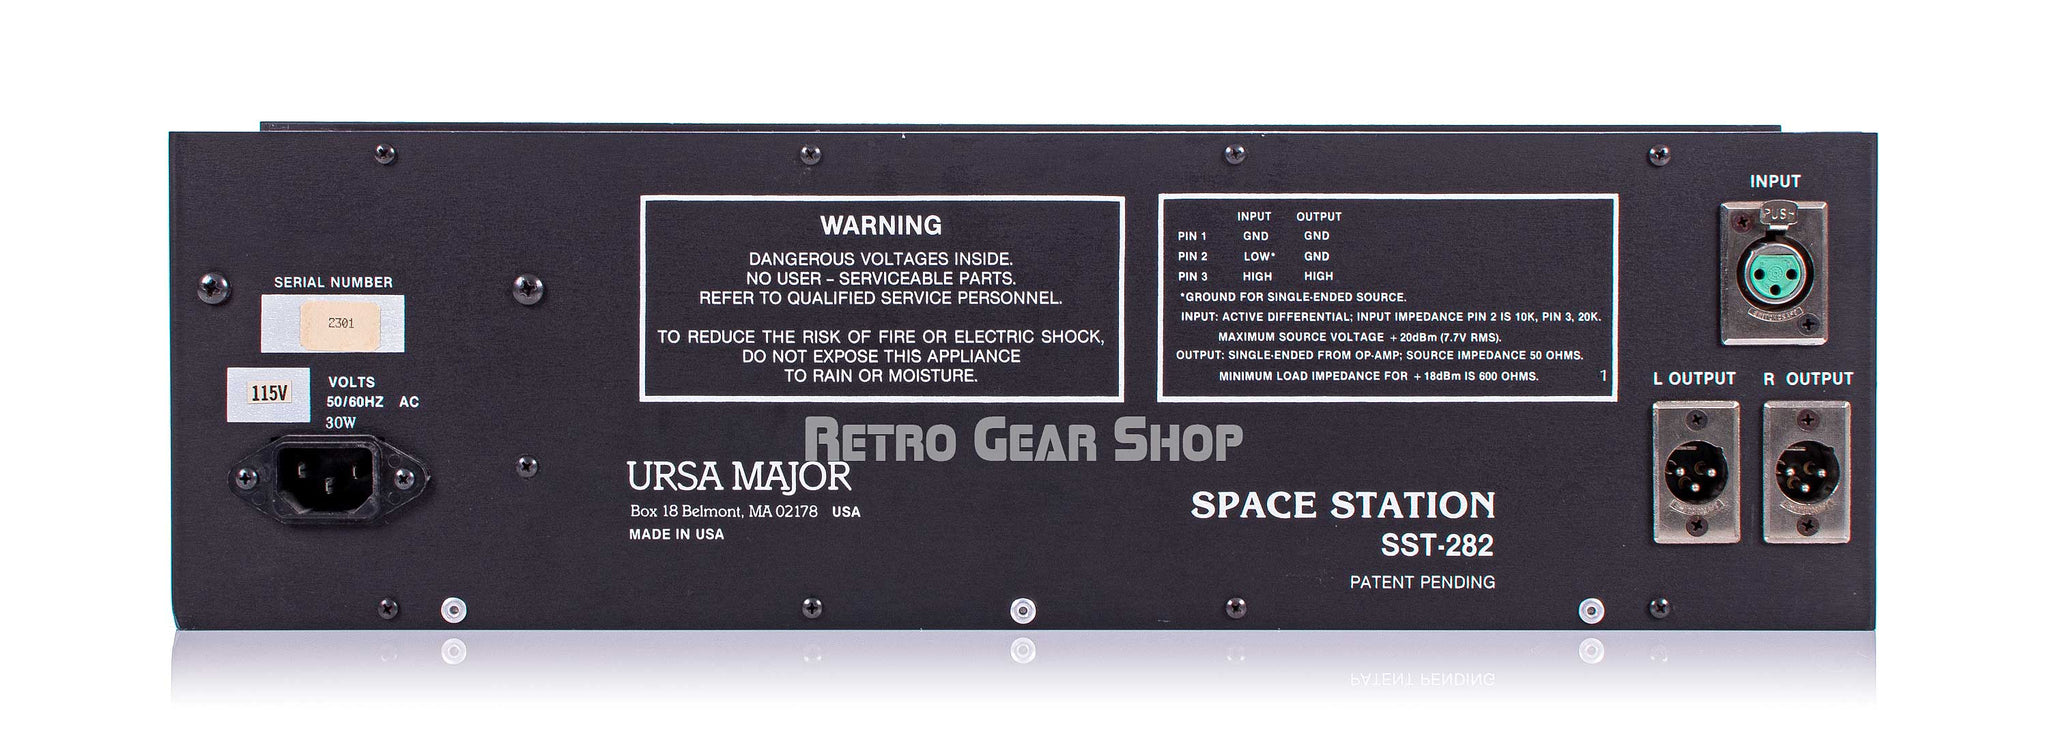 Ursa Major SST-282 Rear